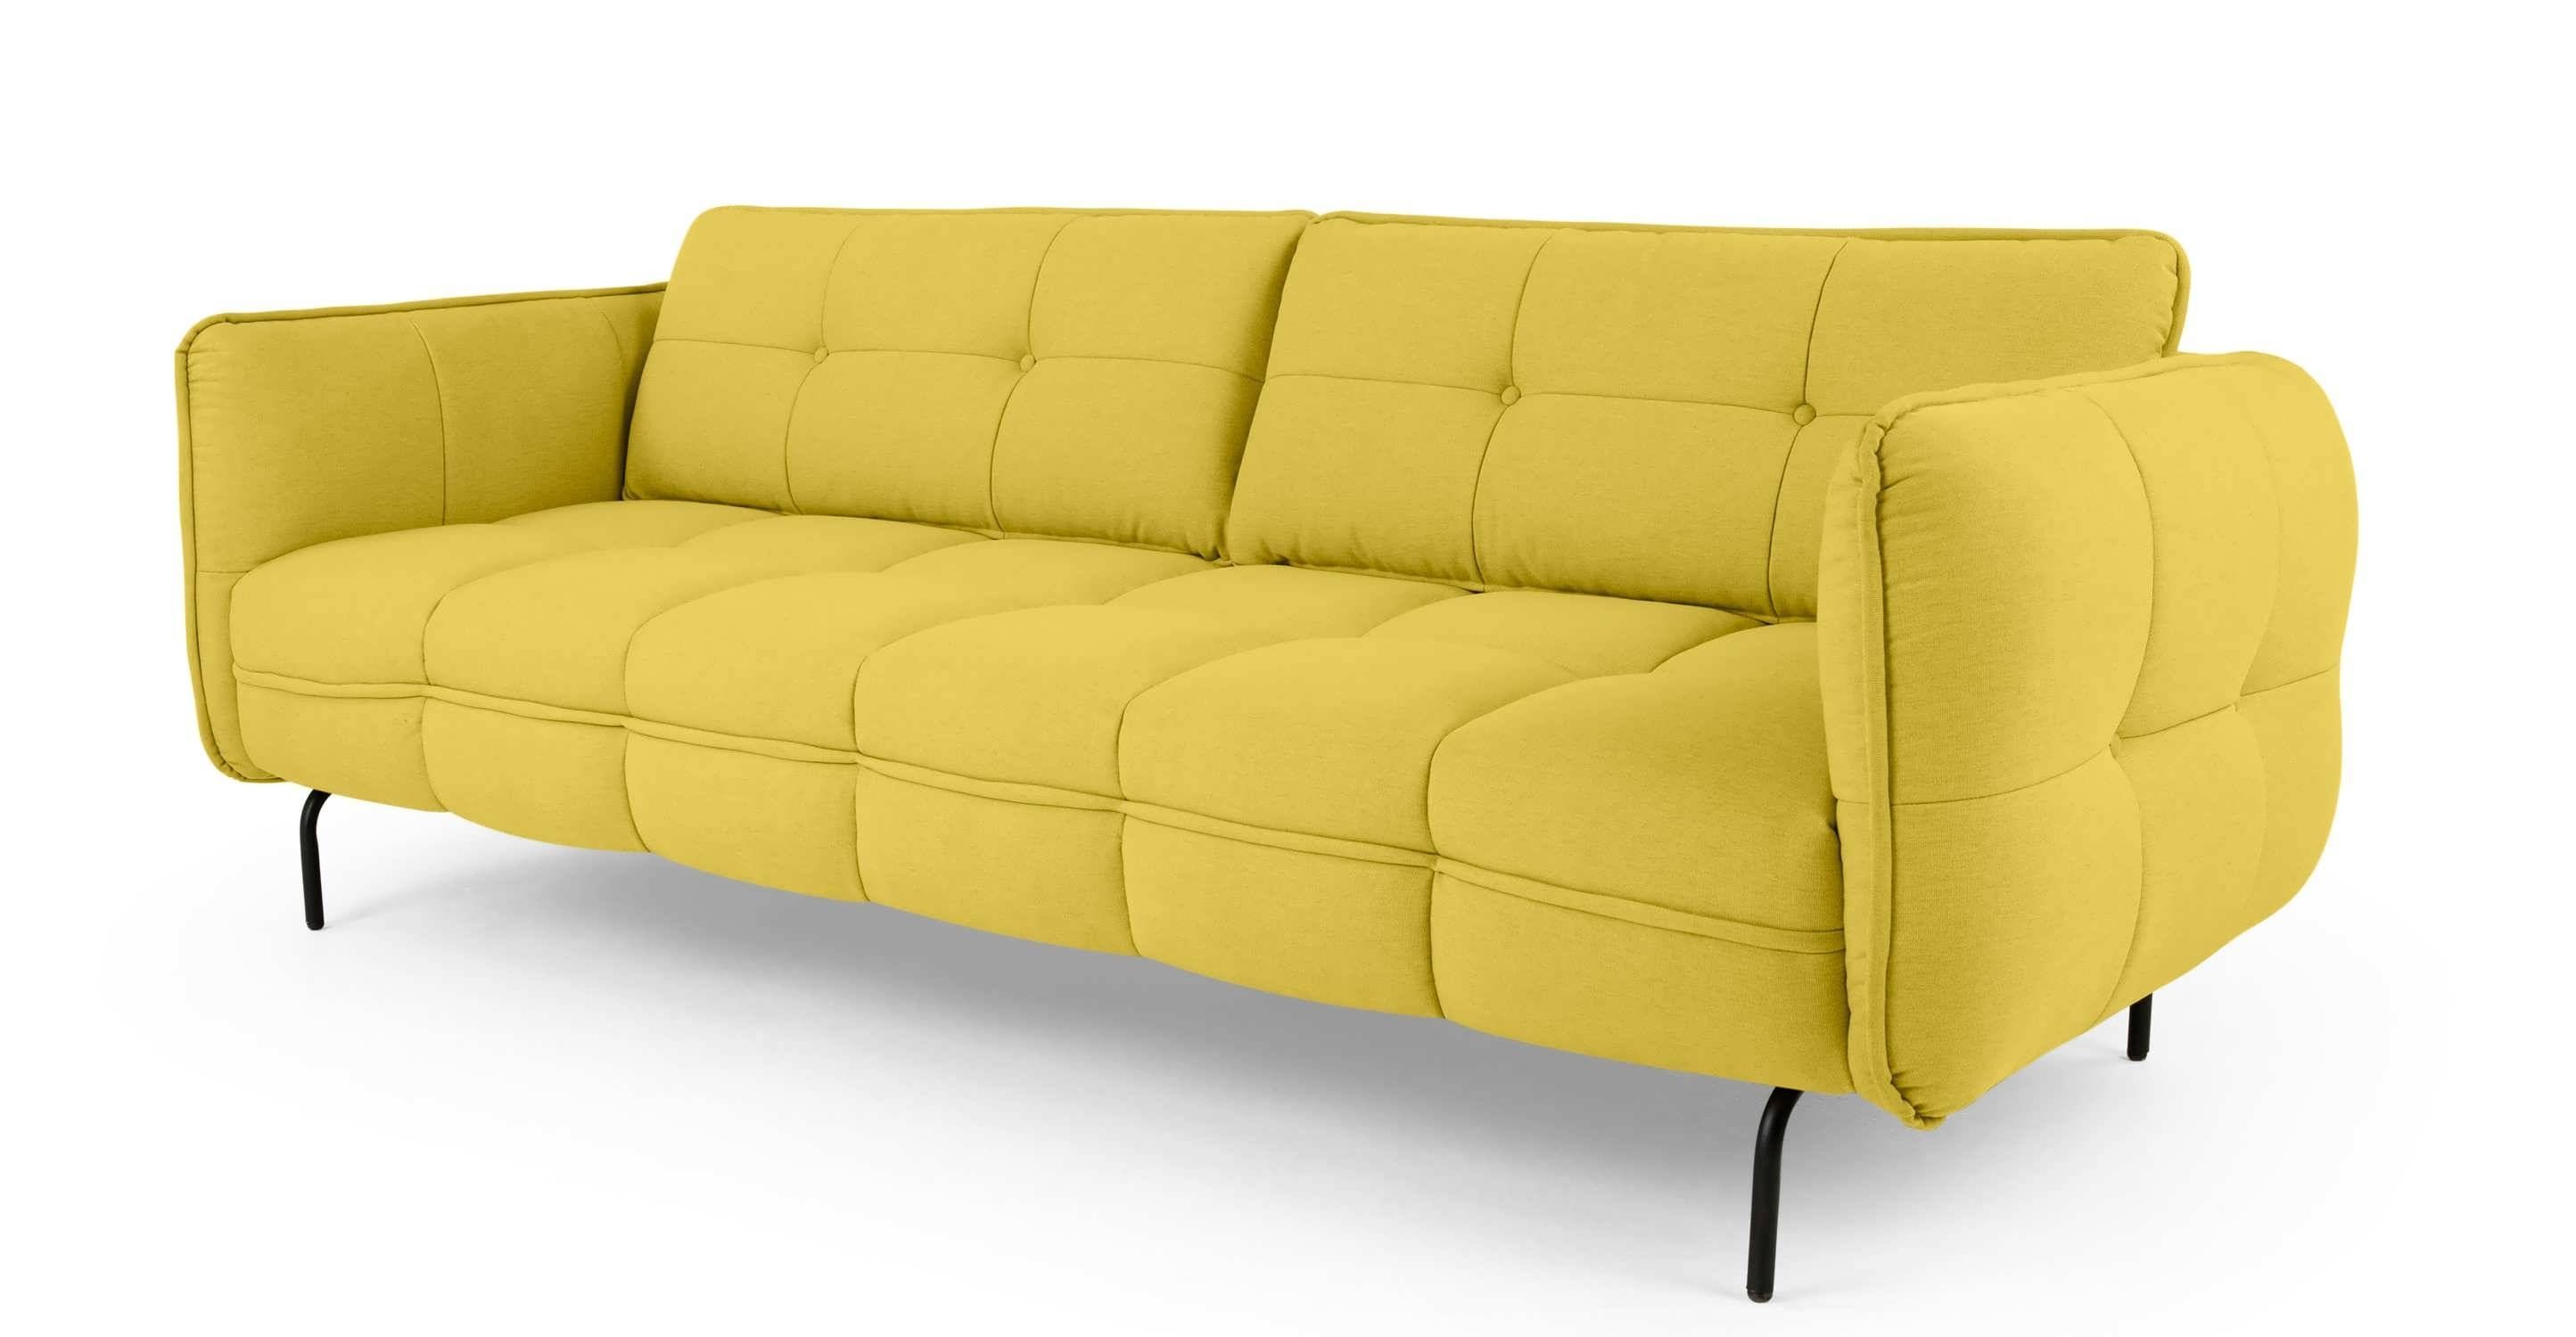 Sofa : Modern Sectional Sofas Contemporary Sofa Sectional Sofa Bed Within Shabby Chic Sectional Sofas (Photo 13 of 15)